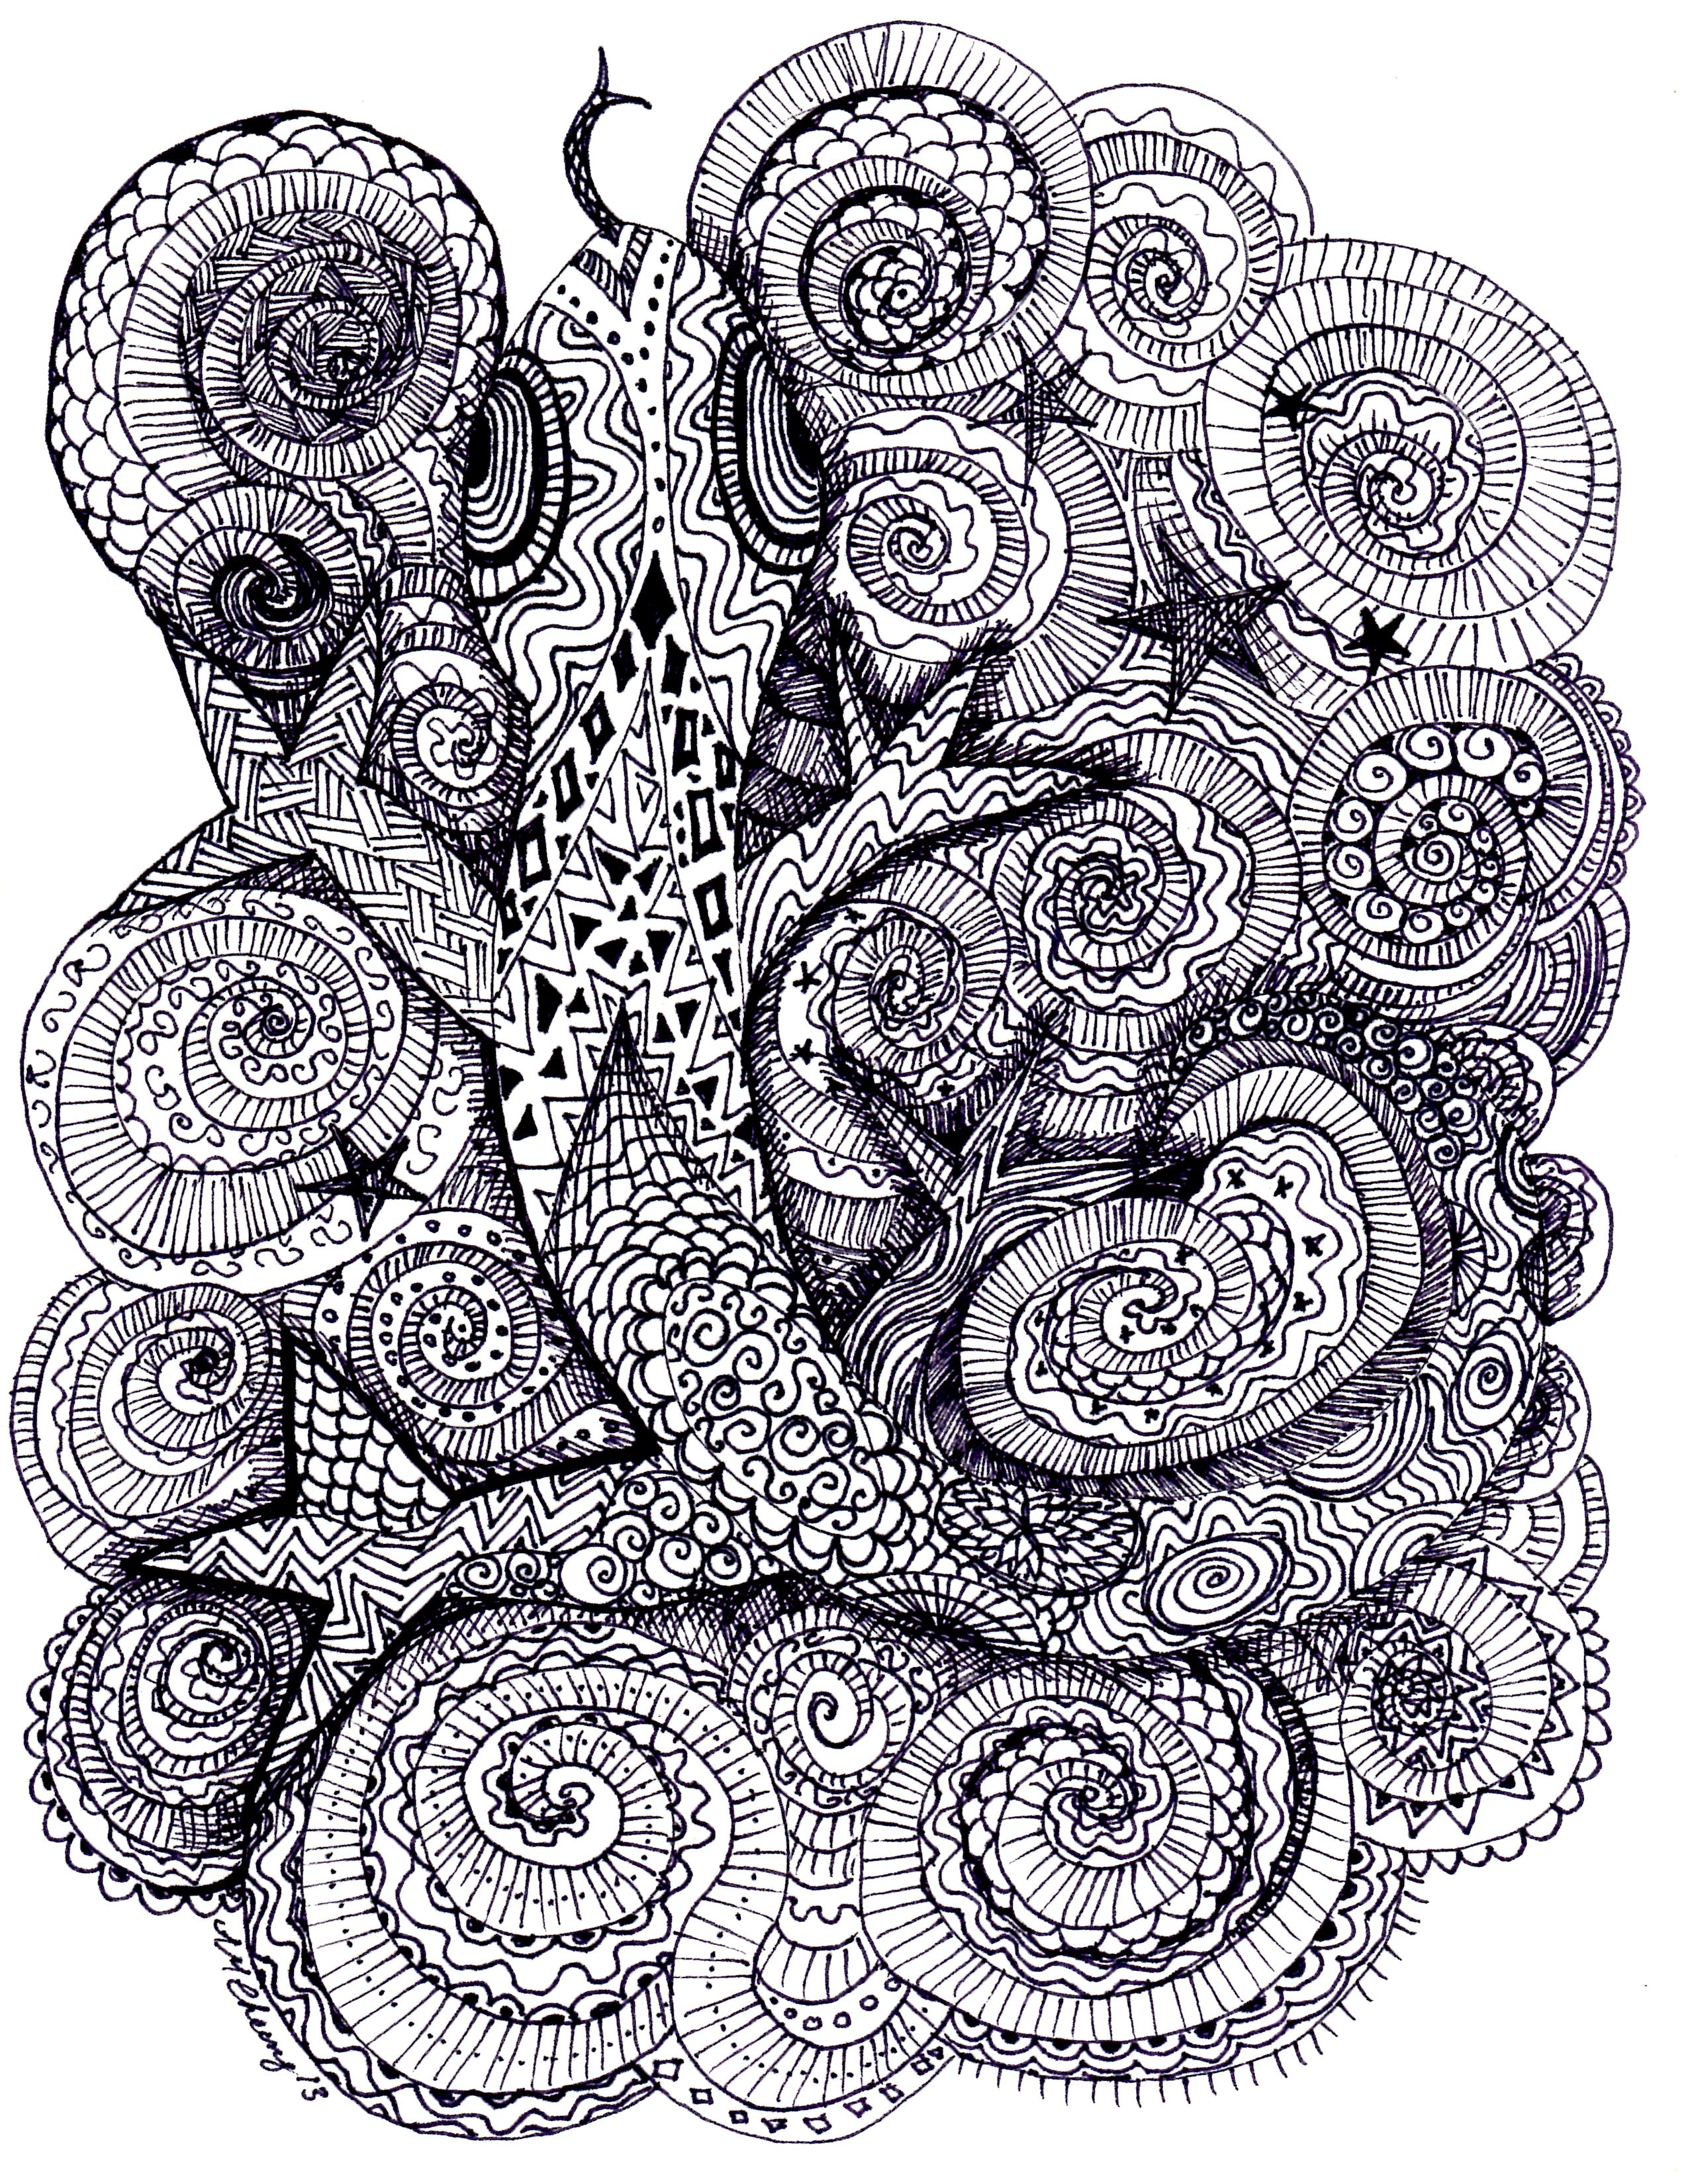 Zen Doodle Lizard by Ann-Marie Cheung